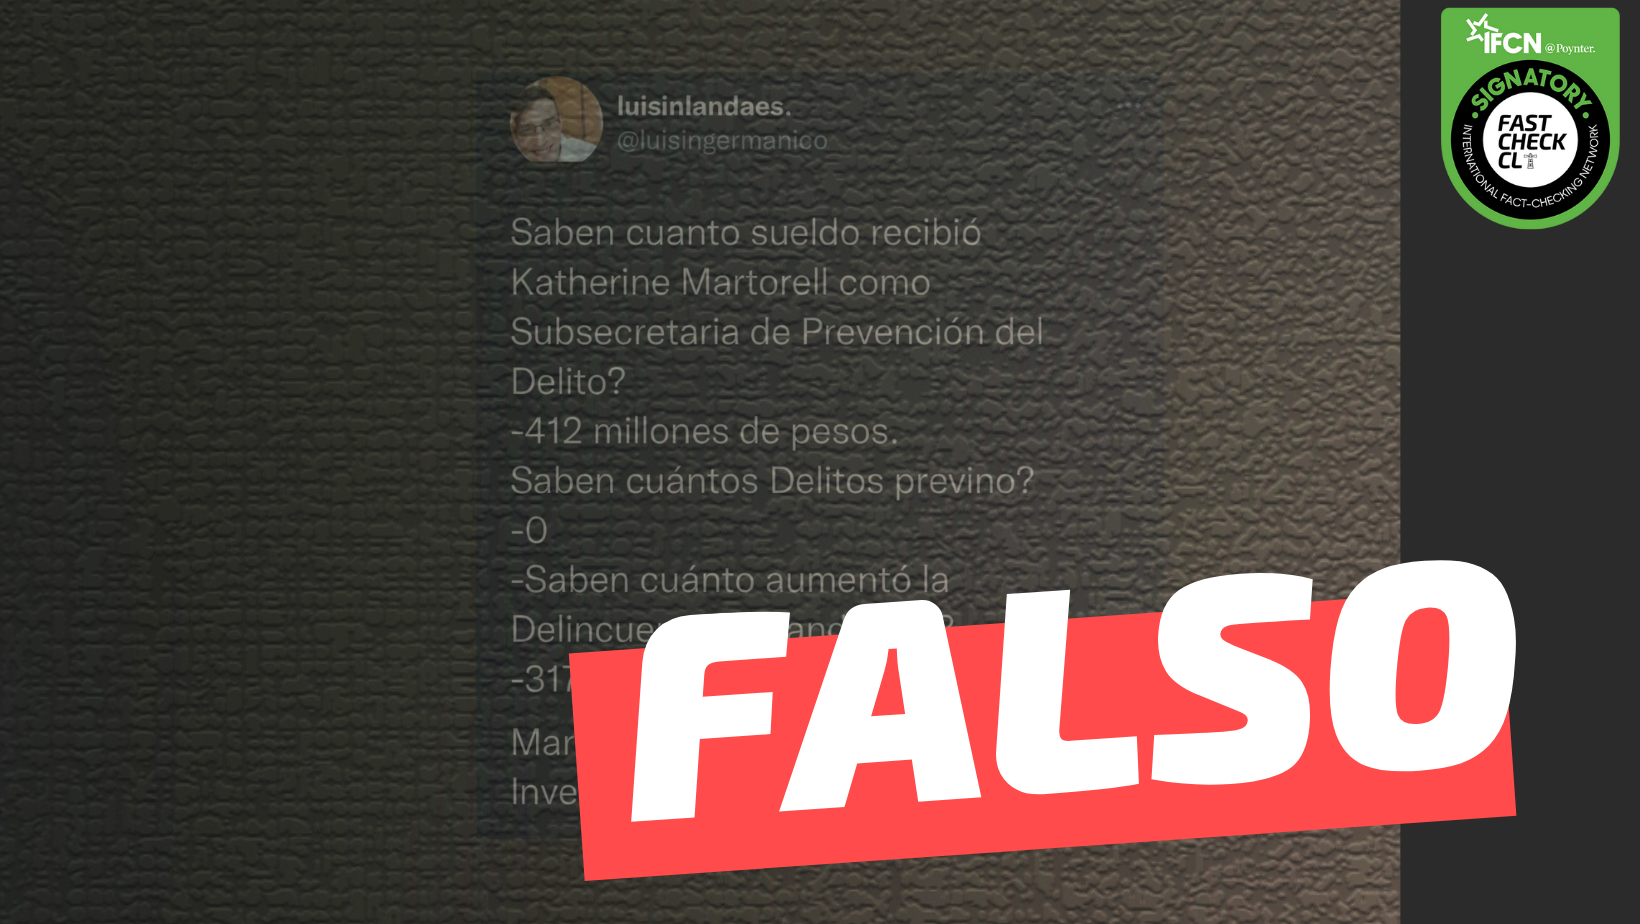 Read more about the article “¿Saben cuánto sueldo recibió Katherine Martorell como subsecretaria de prevención del delito? 412 millones de pesos, ¿saben cuánto aumentó la delincuencia estando ella? 317%”: #Falso